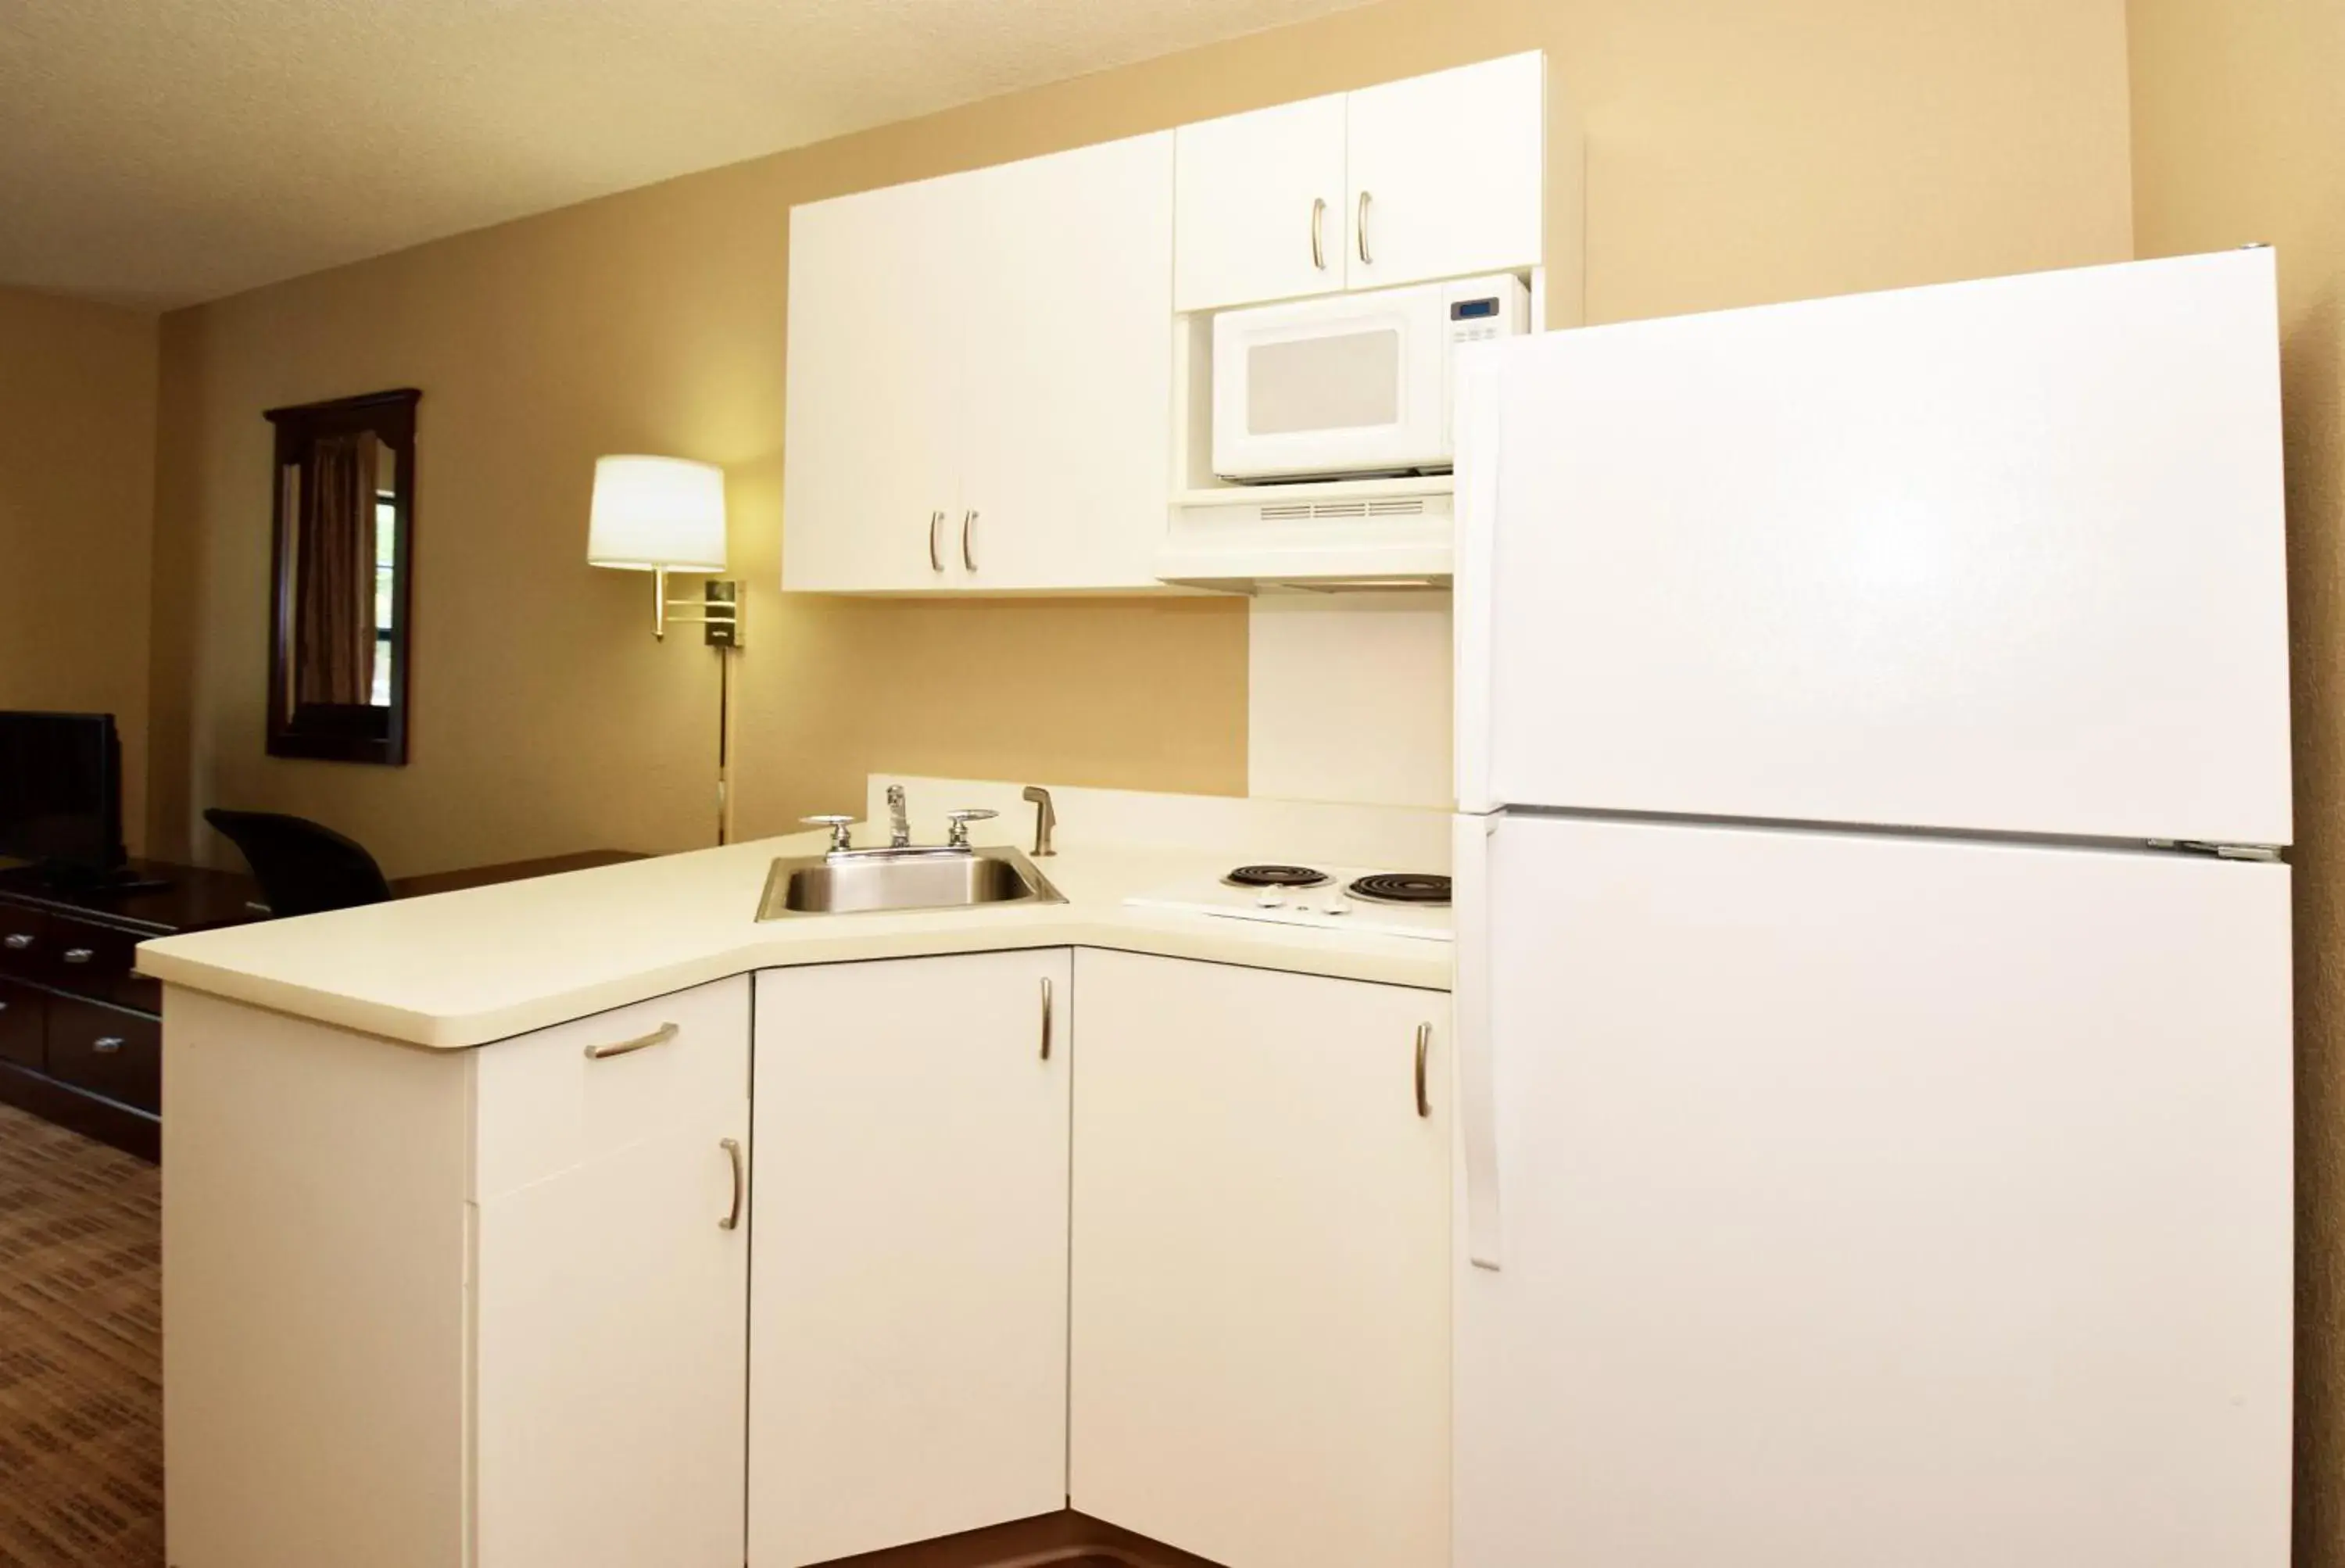 Kitchen or kitchenette, Kitchen/Kitchenette in Extended Stay America Suites - Washington, DC - Landover